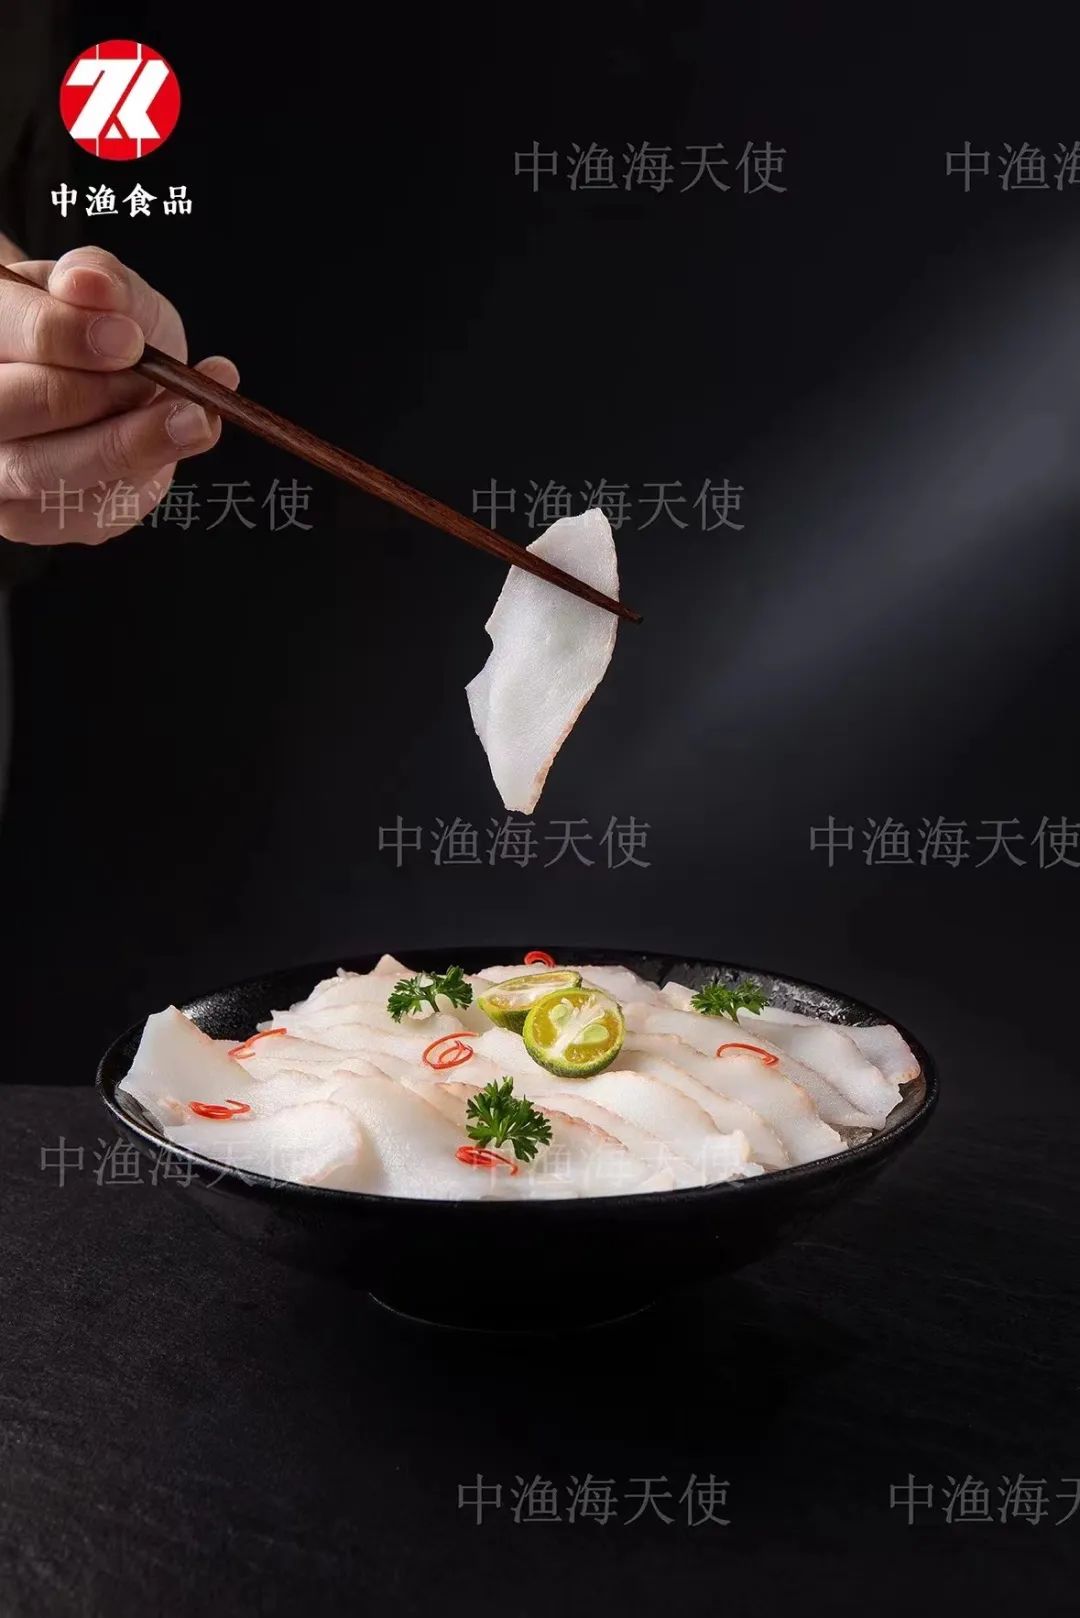 展商路透 | 中渔食品(福建)有限公司——专业海螺供应商(图7)